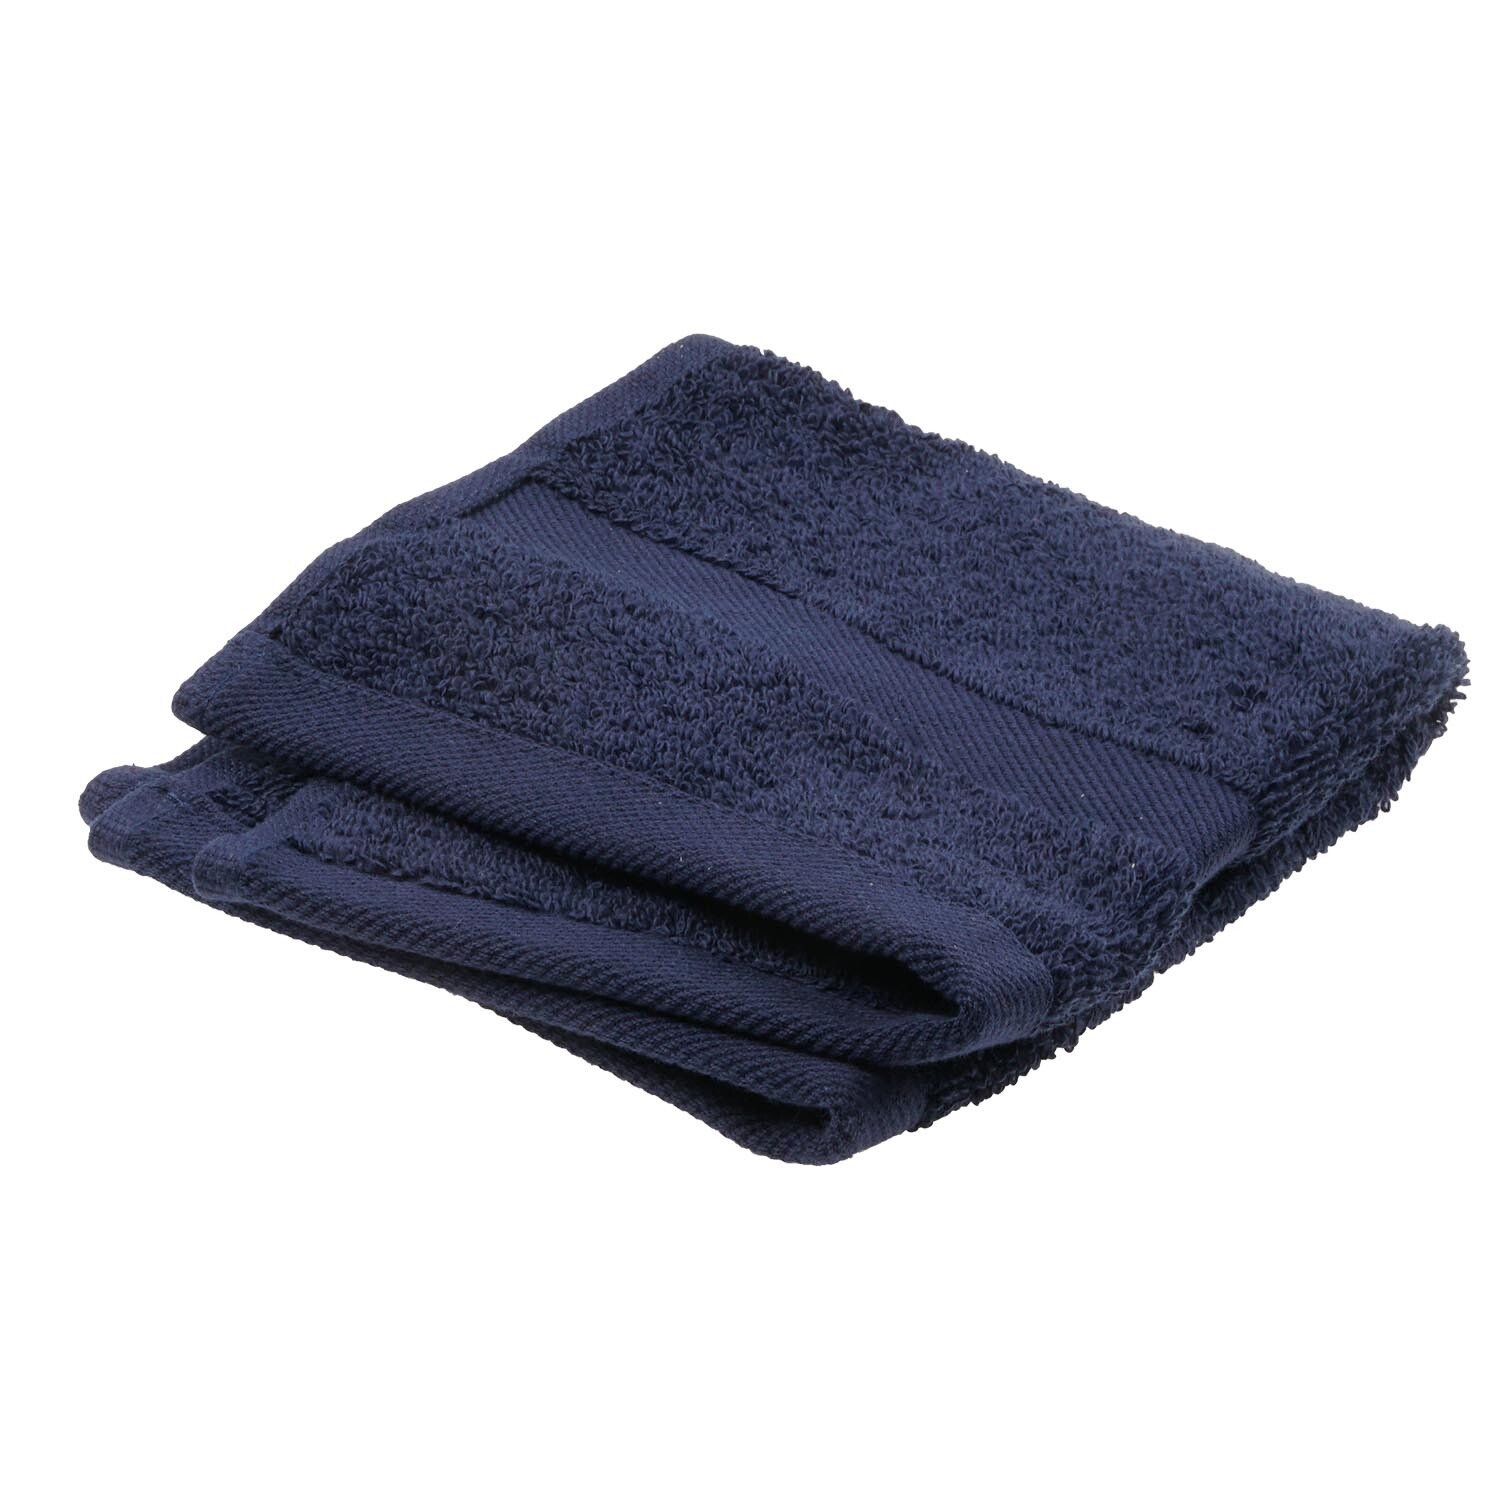 Divante Hand Towel  - Grey Image 1